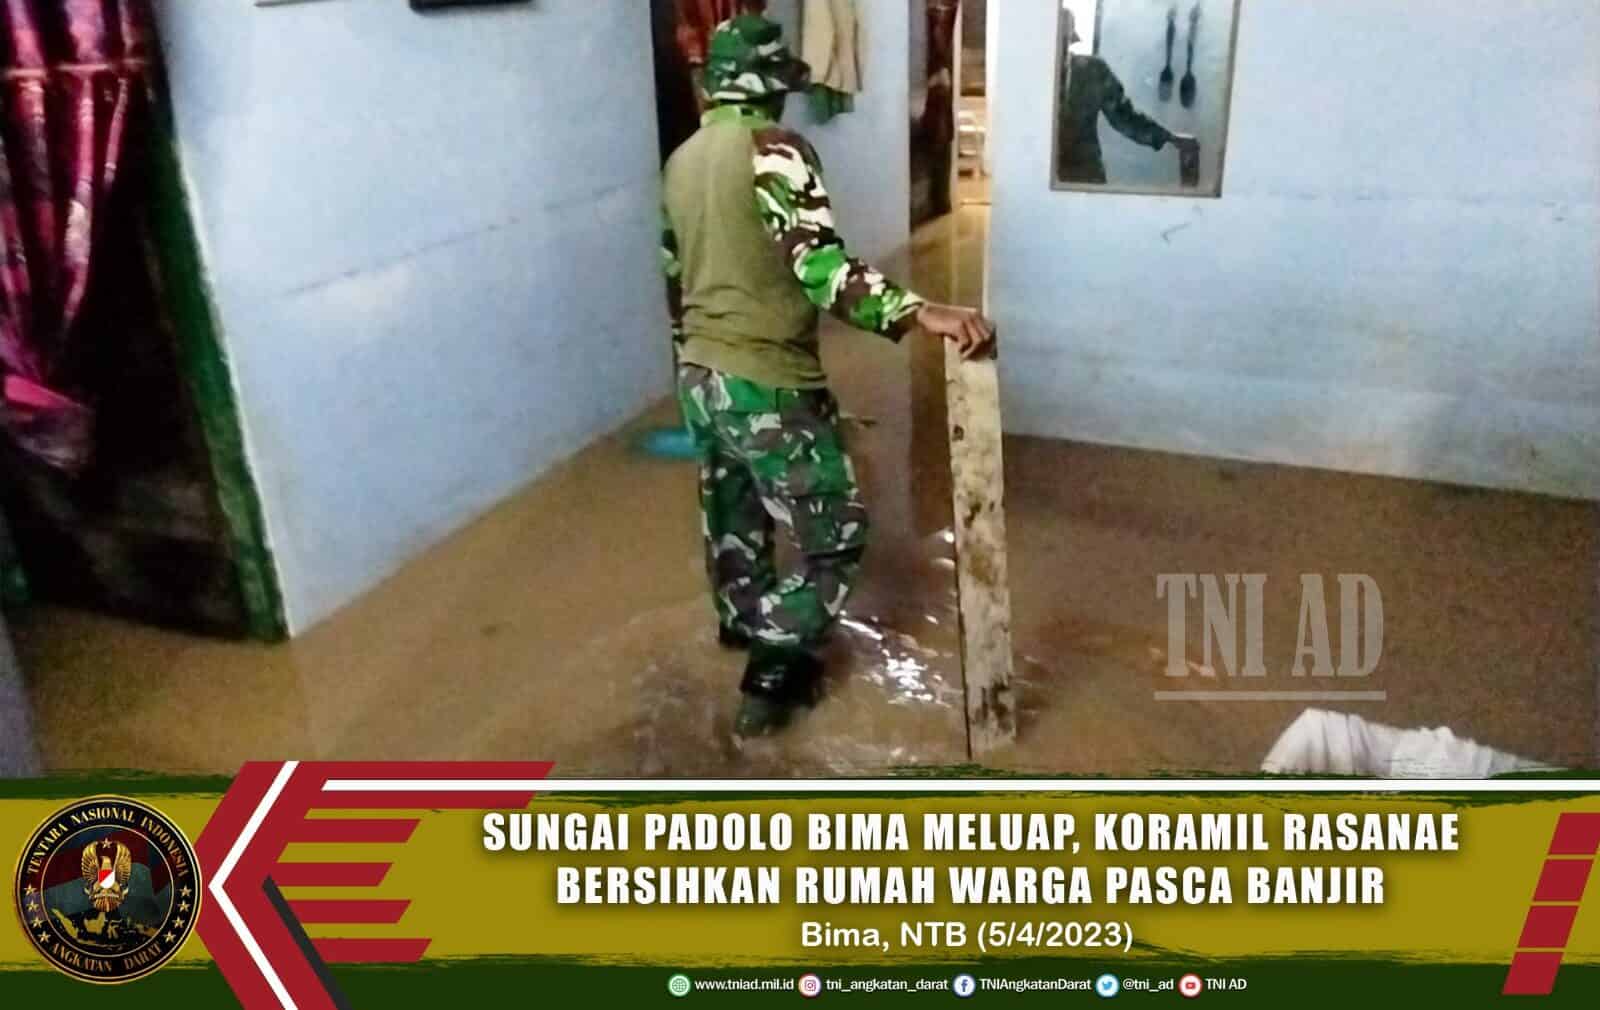 Sungai Padolo Bima Meluap, Koramil Rasanae Bersihkan Rumah Warga Pasca Banjir